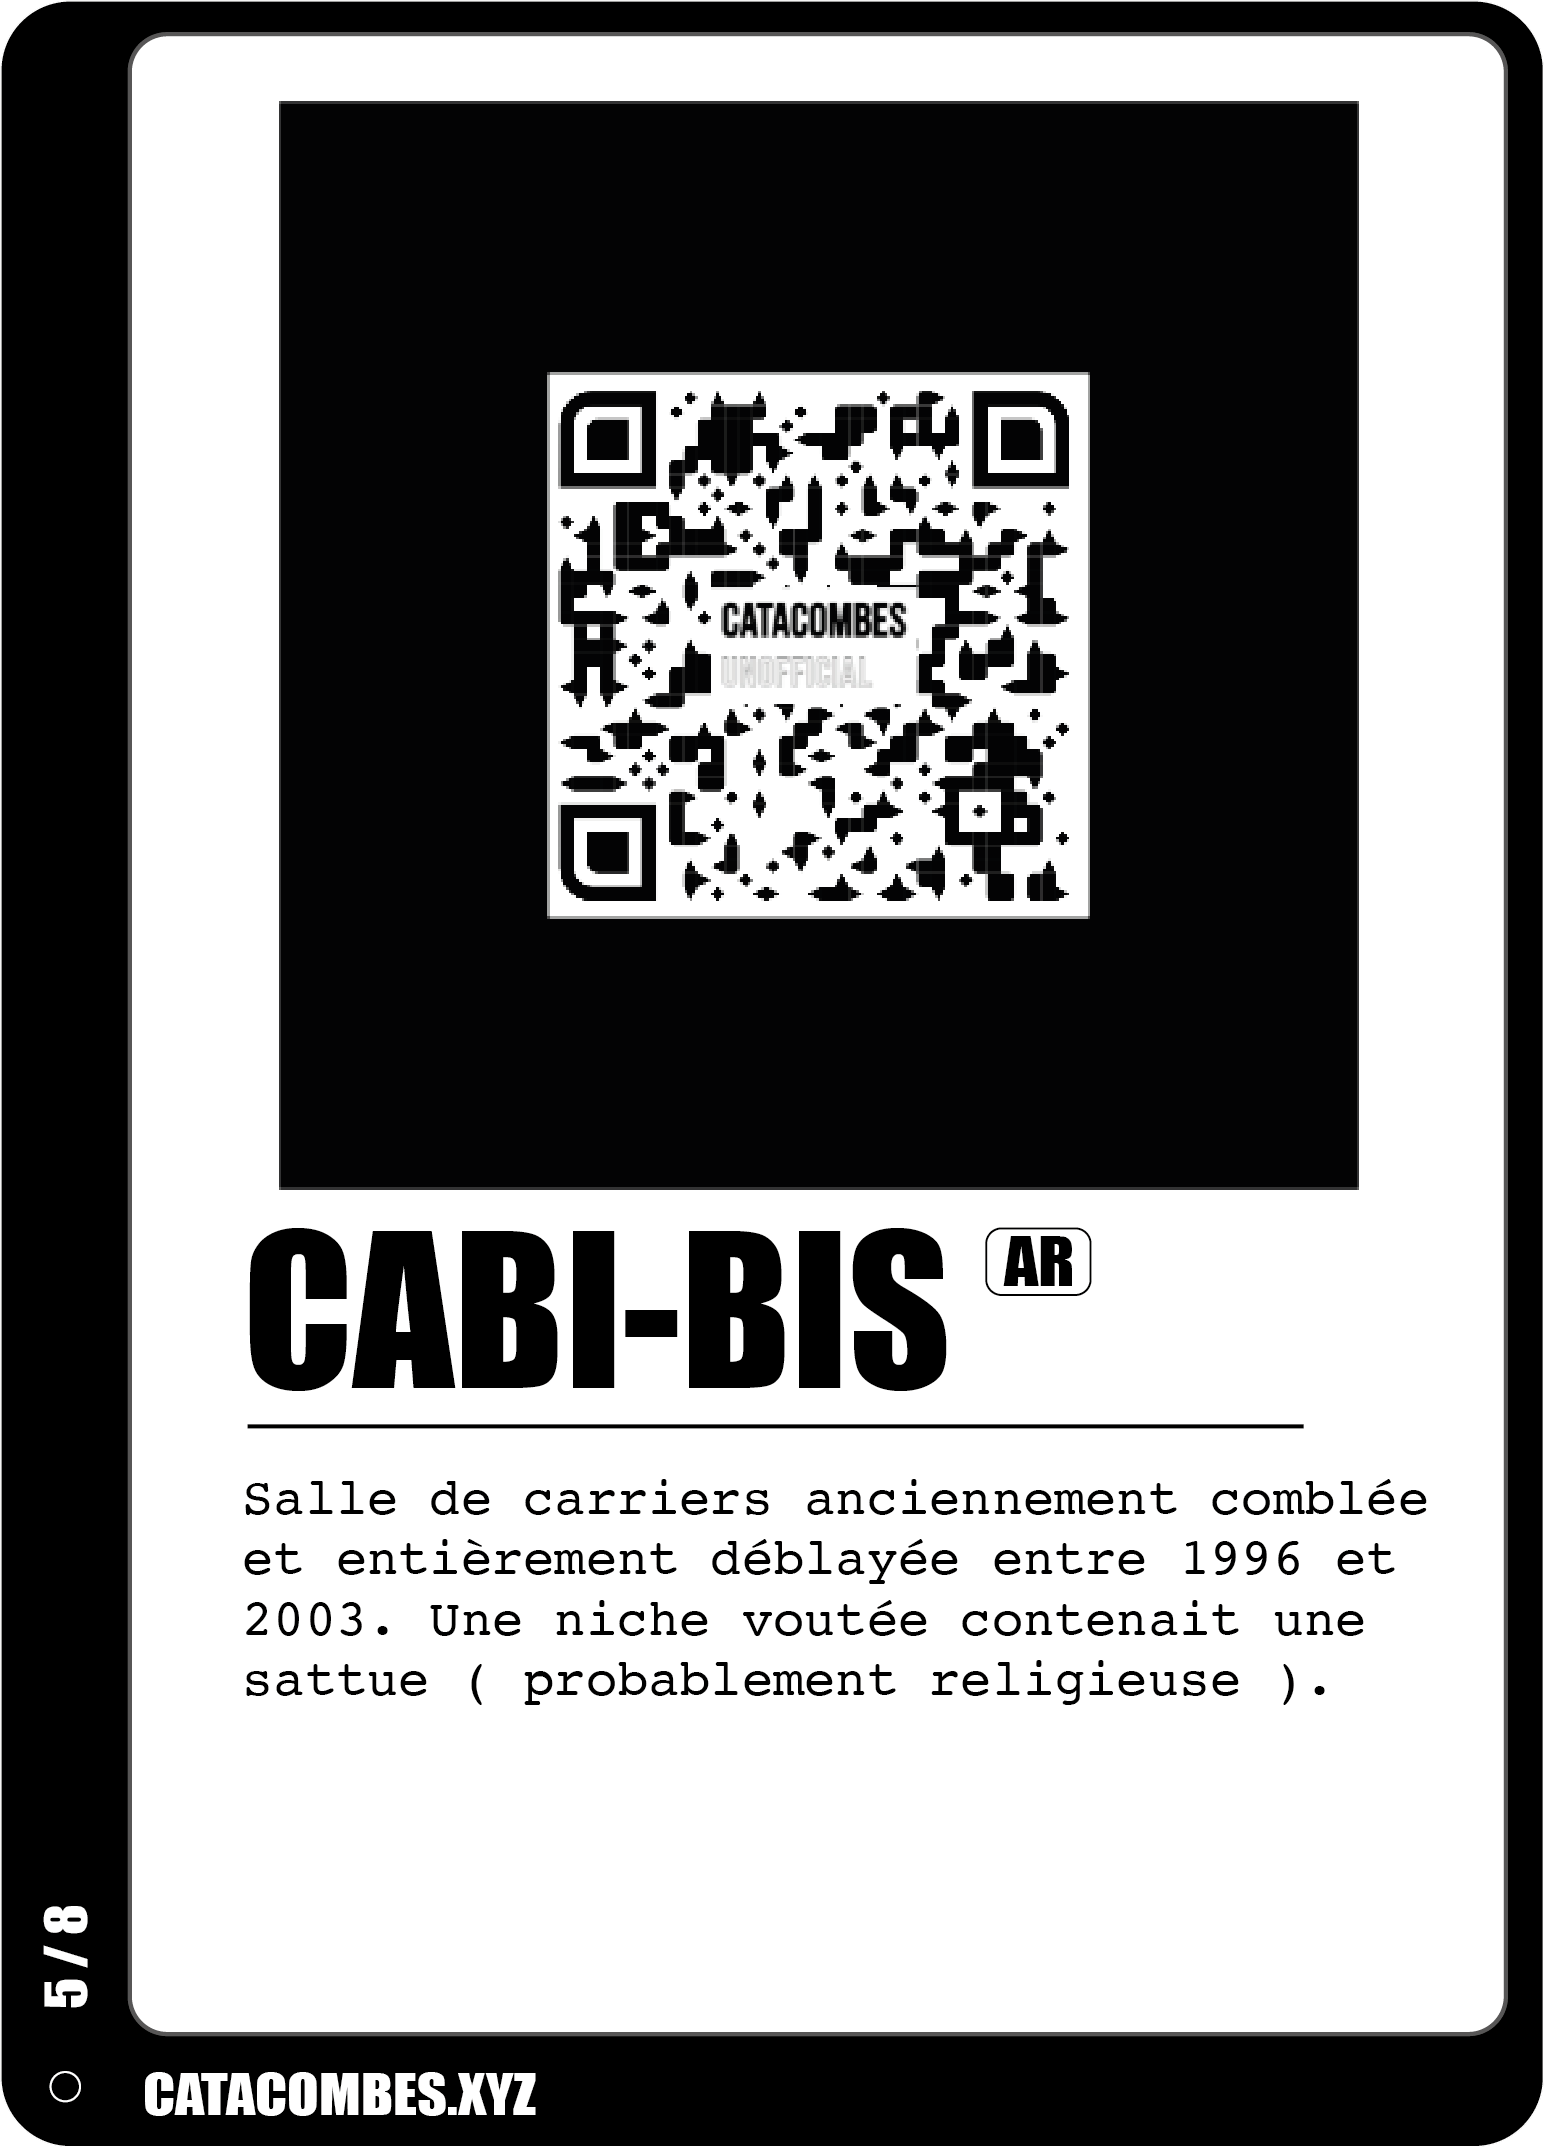 QR code permettant de faire apparaitre la salle Cabi-bis en AR ainsi que des informations